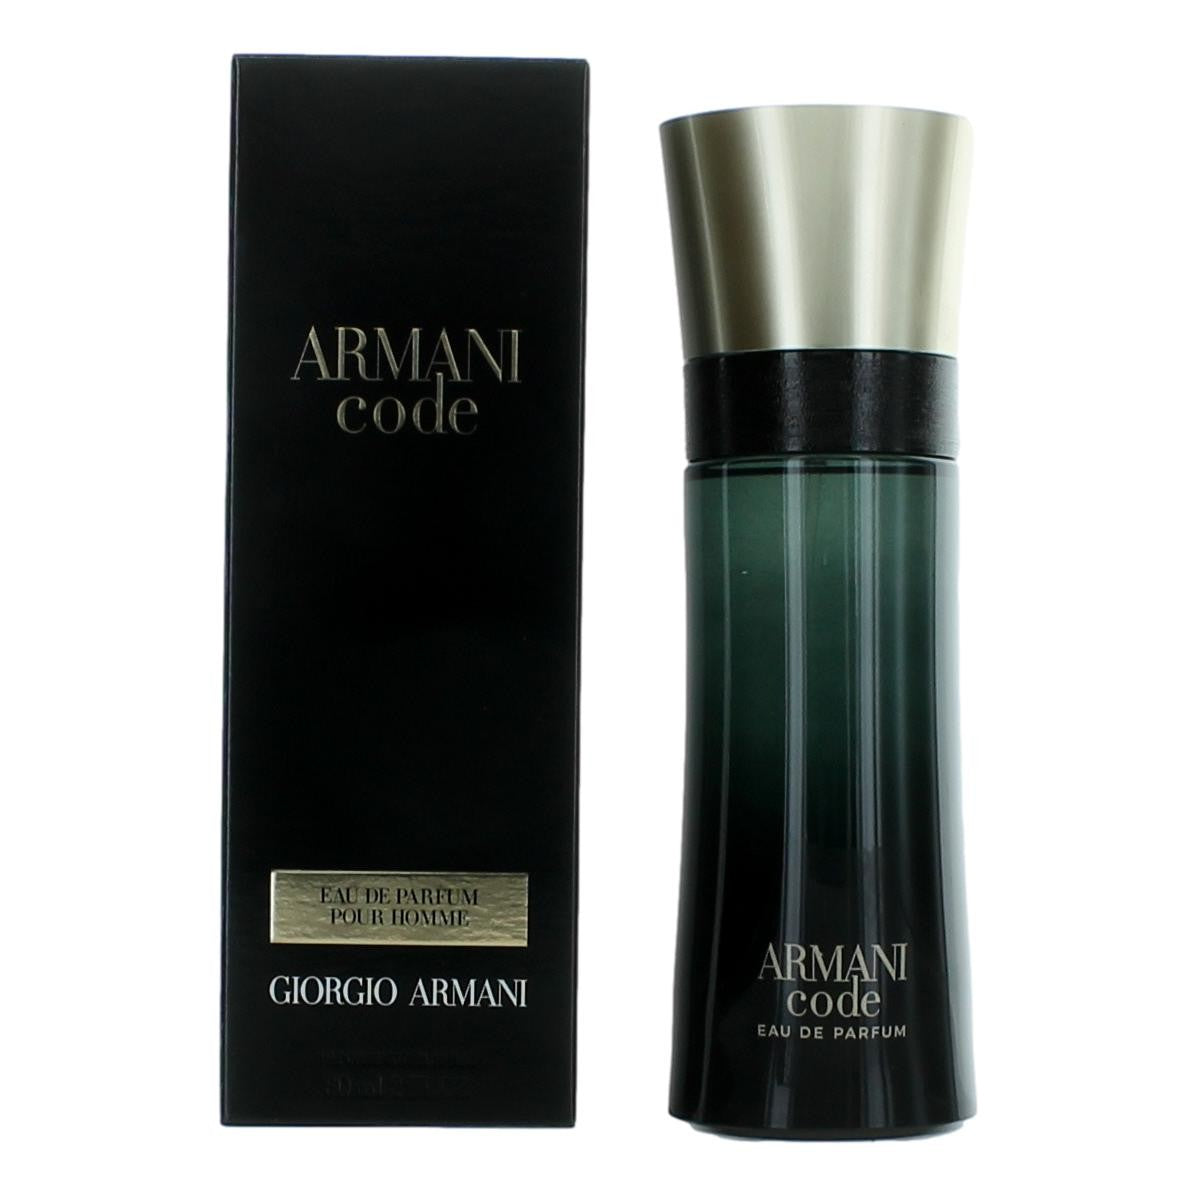 Armani Code by Giorgio Armani